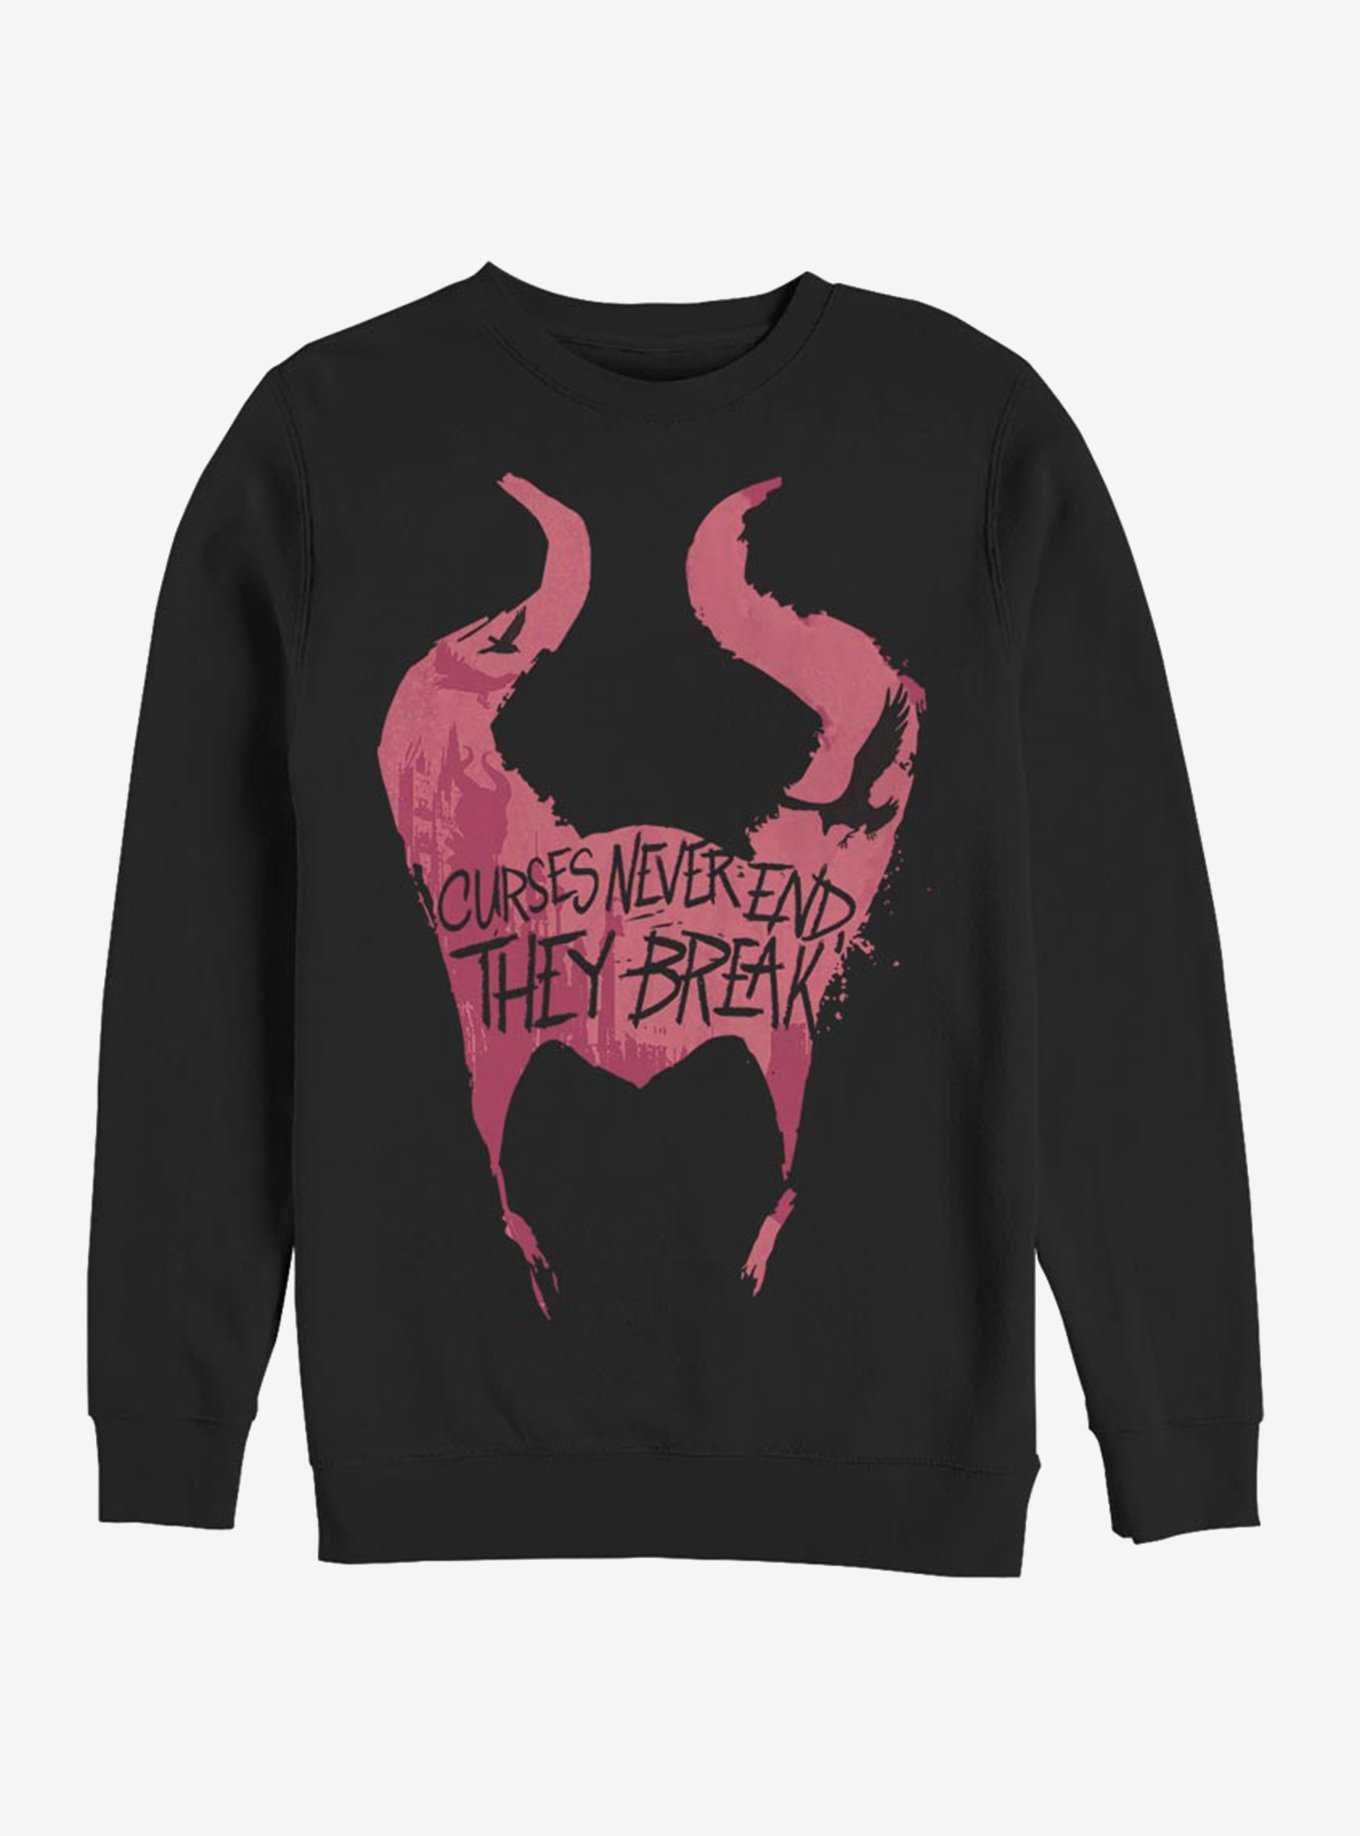 Disney Maleficent: Mistress Of Evil Cursed Horns Sweatshirt, , hi-res